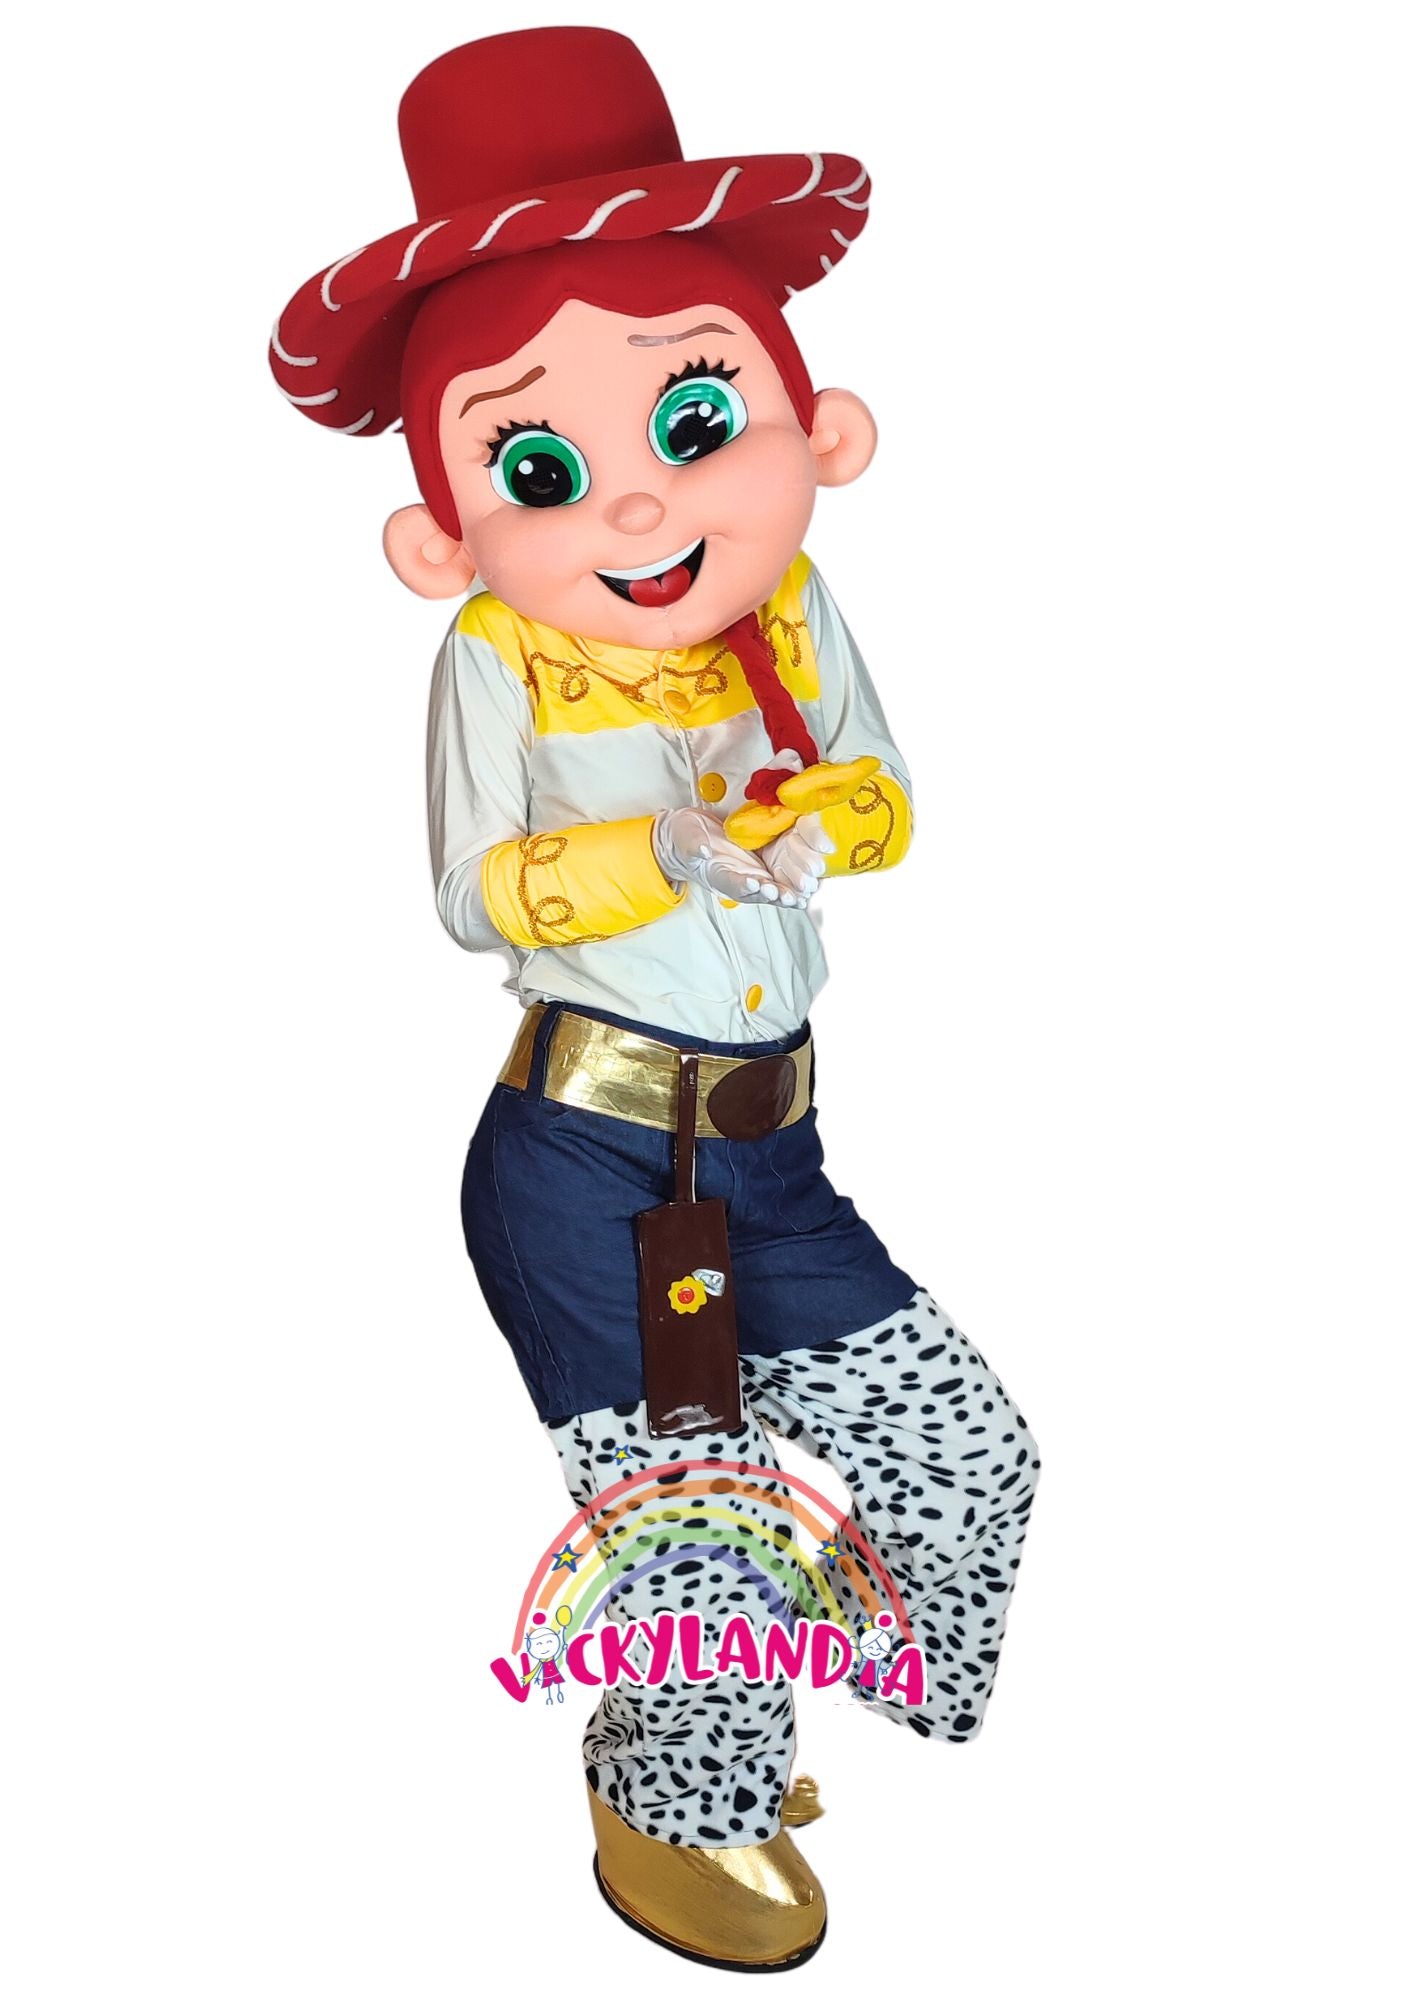 Descubre la magia de nuestro muñeco publicitario de Chica Vaquera en Vickylandia. Son disfraces cabezones perfectos para fiestas infantiles, shows, cumpleaños, estrategias publicitarias, espectáculos, cabalgatas y cualquier tipo de evento.